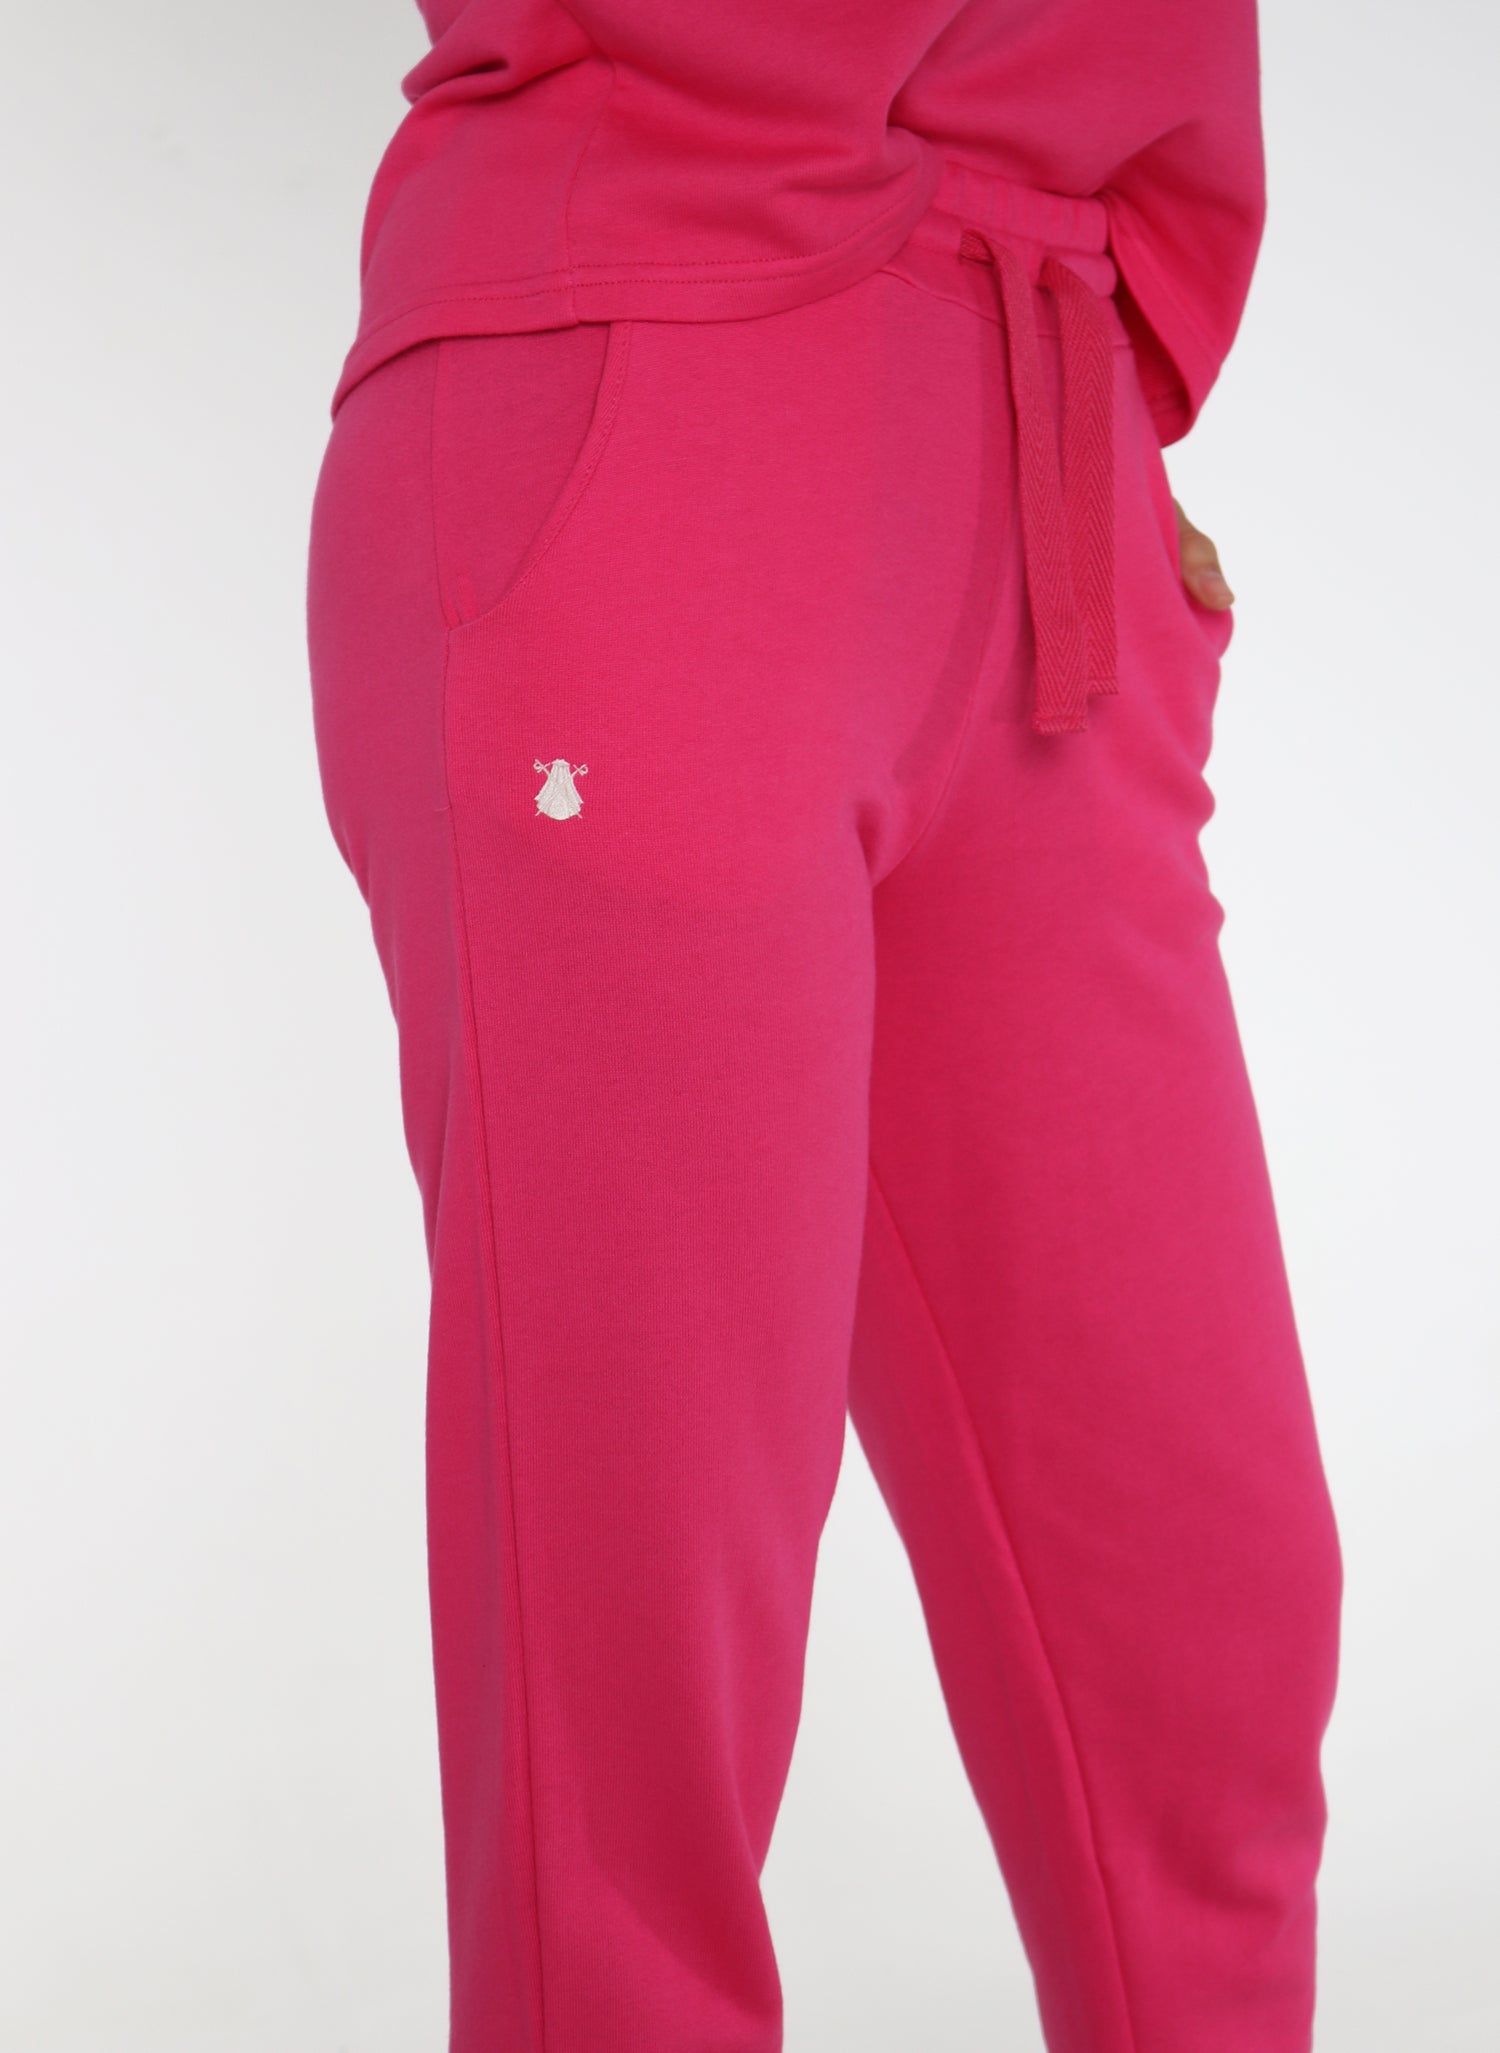 Pantalón Soft Mujer Rosa Capote